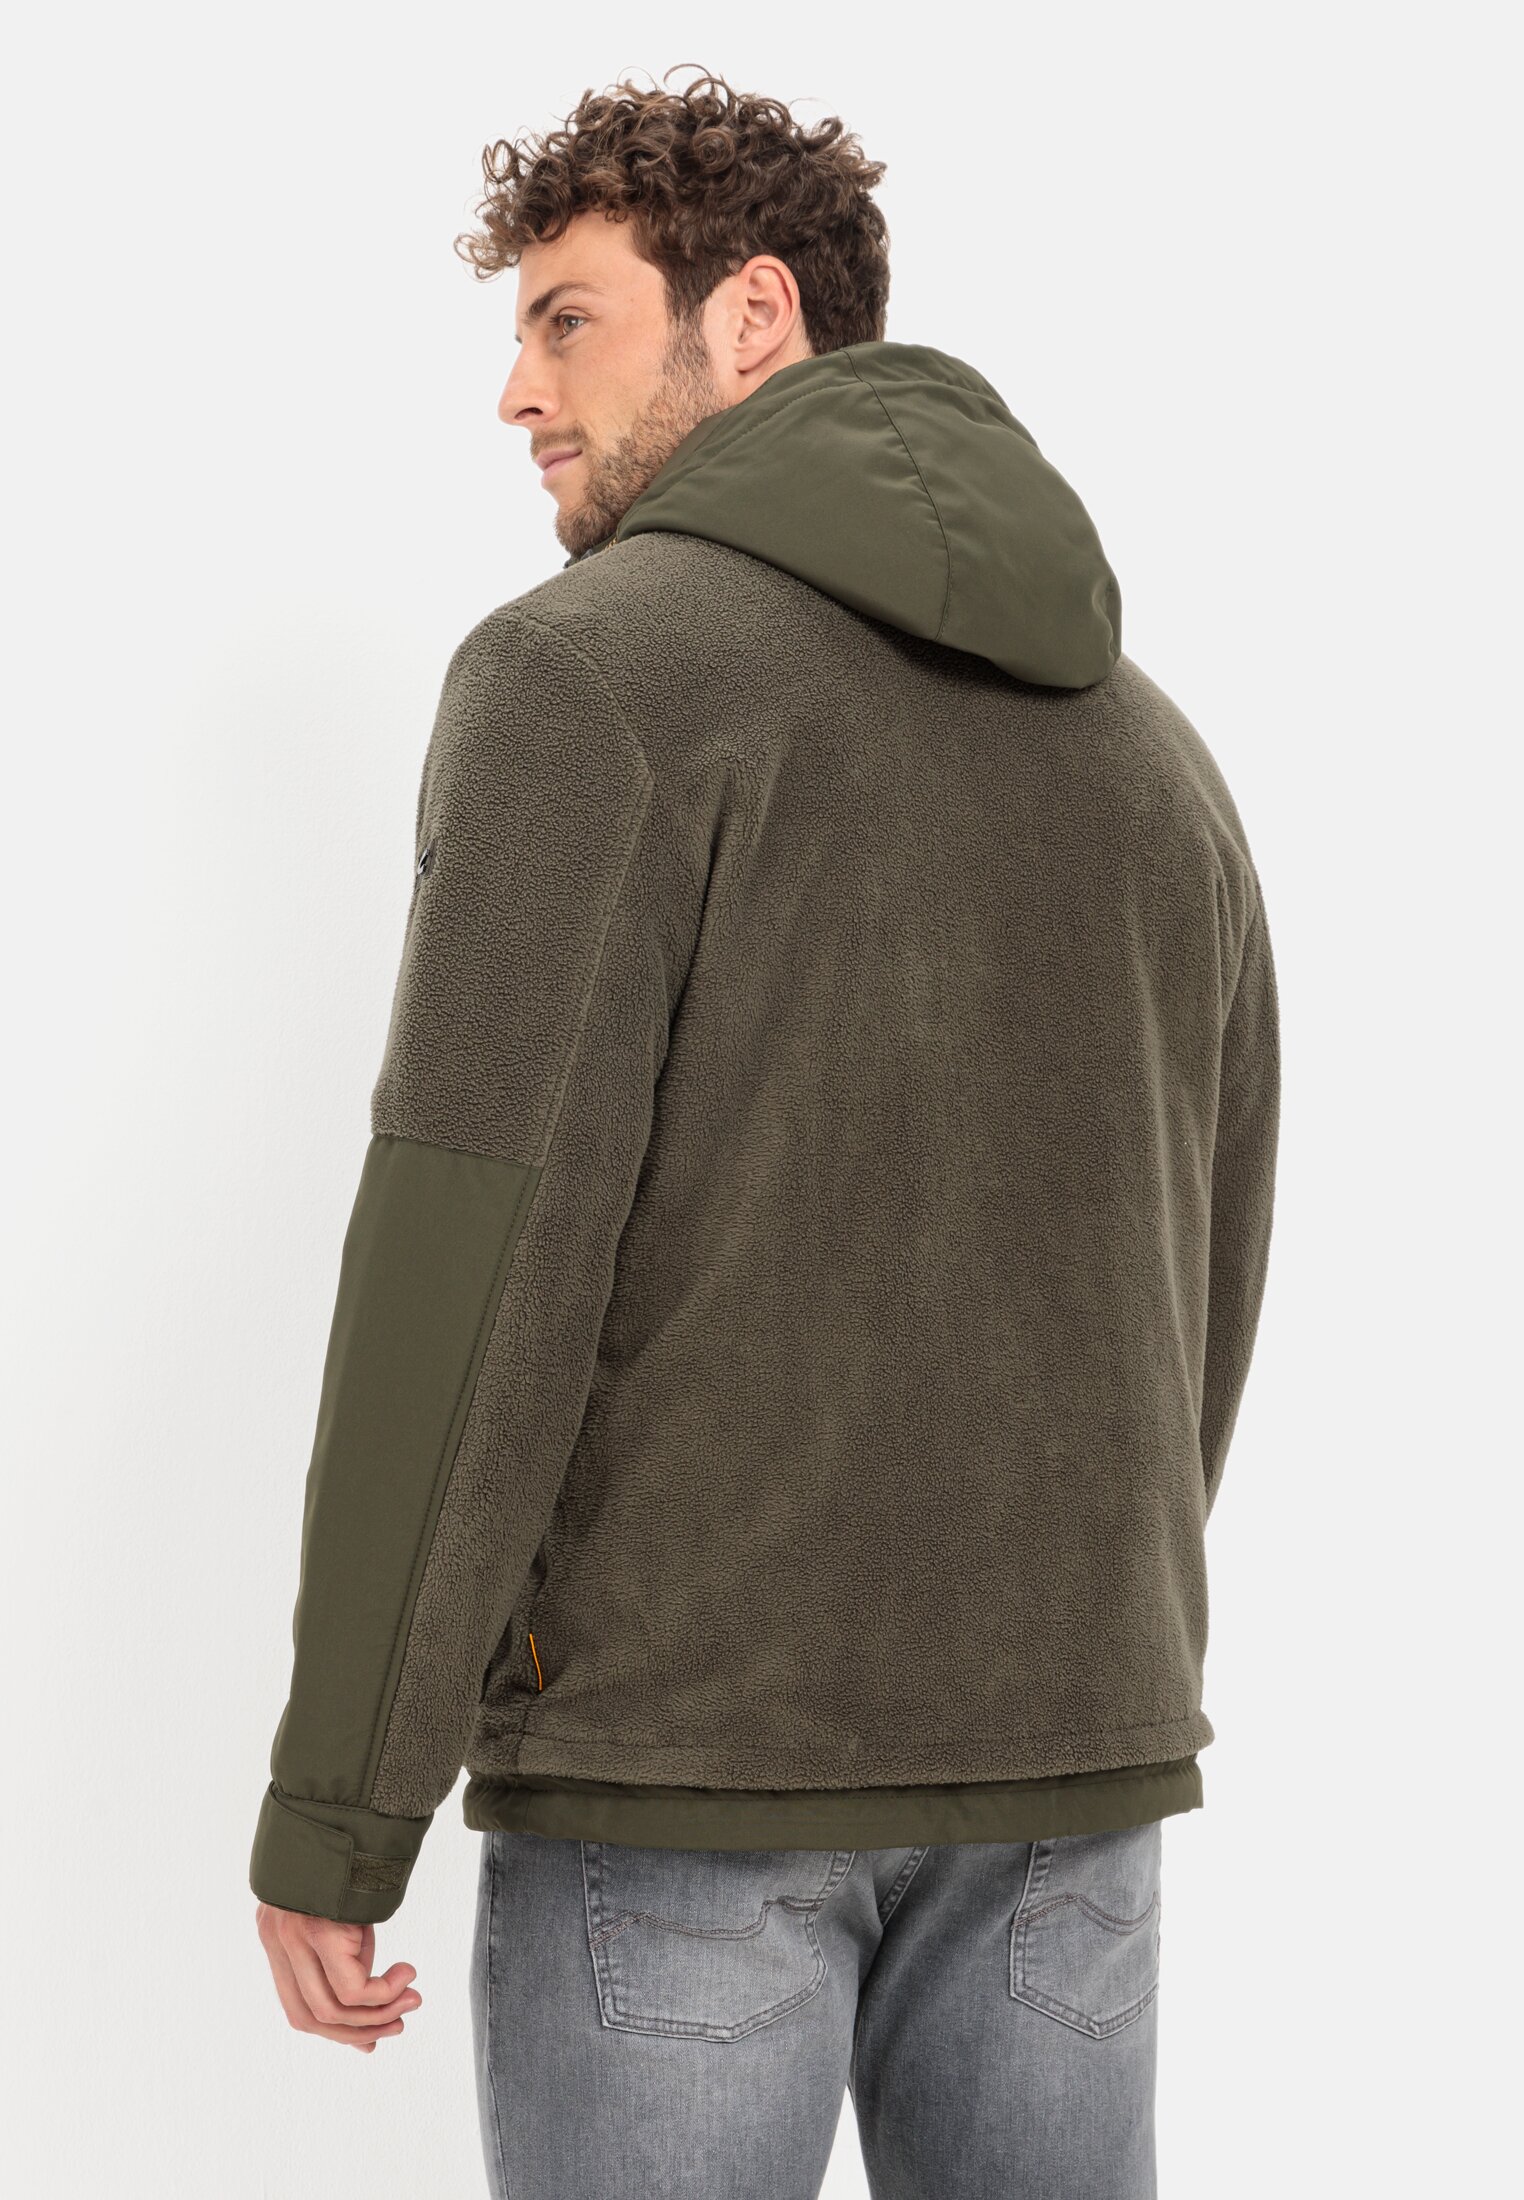 Lined fleece jacket for Herren in Dark Khaki | 46